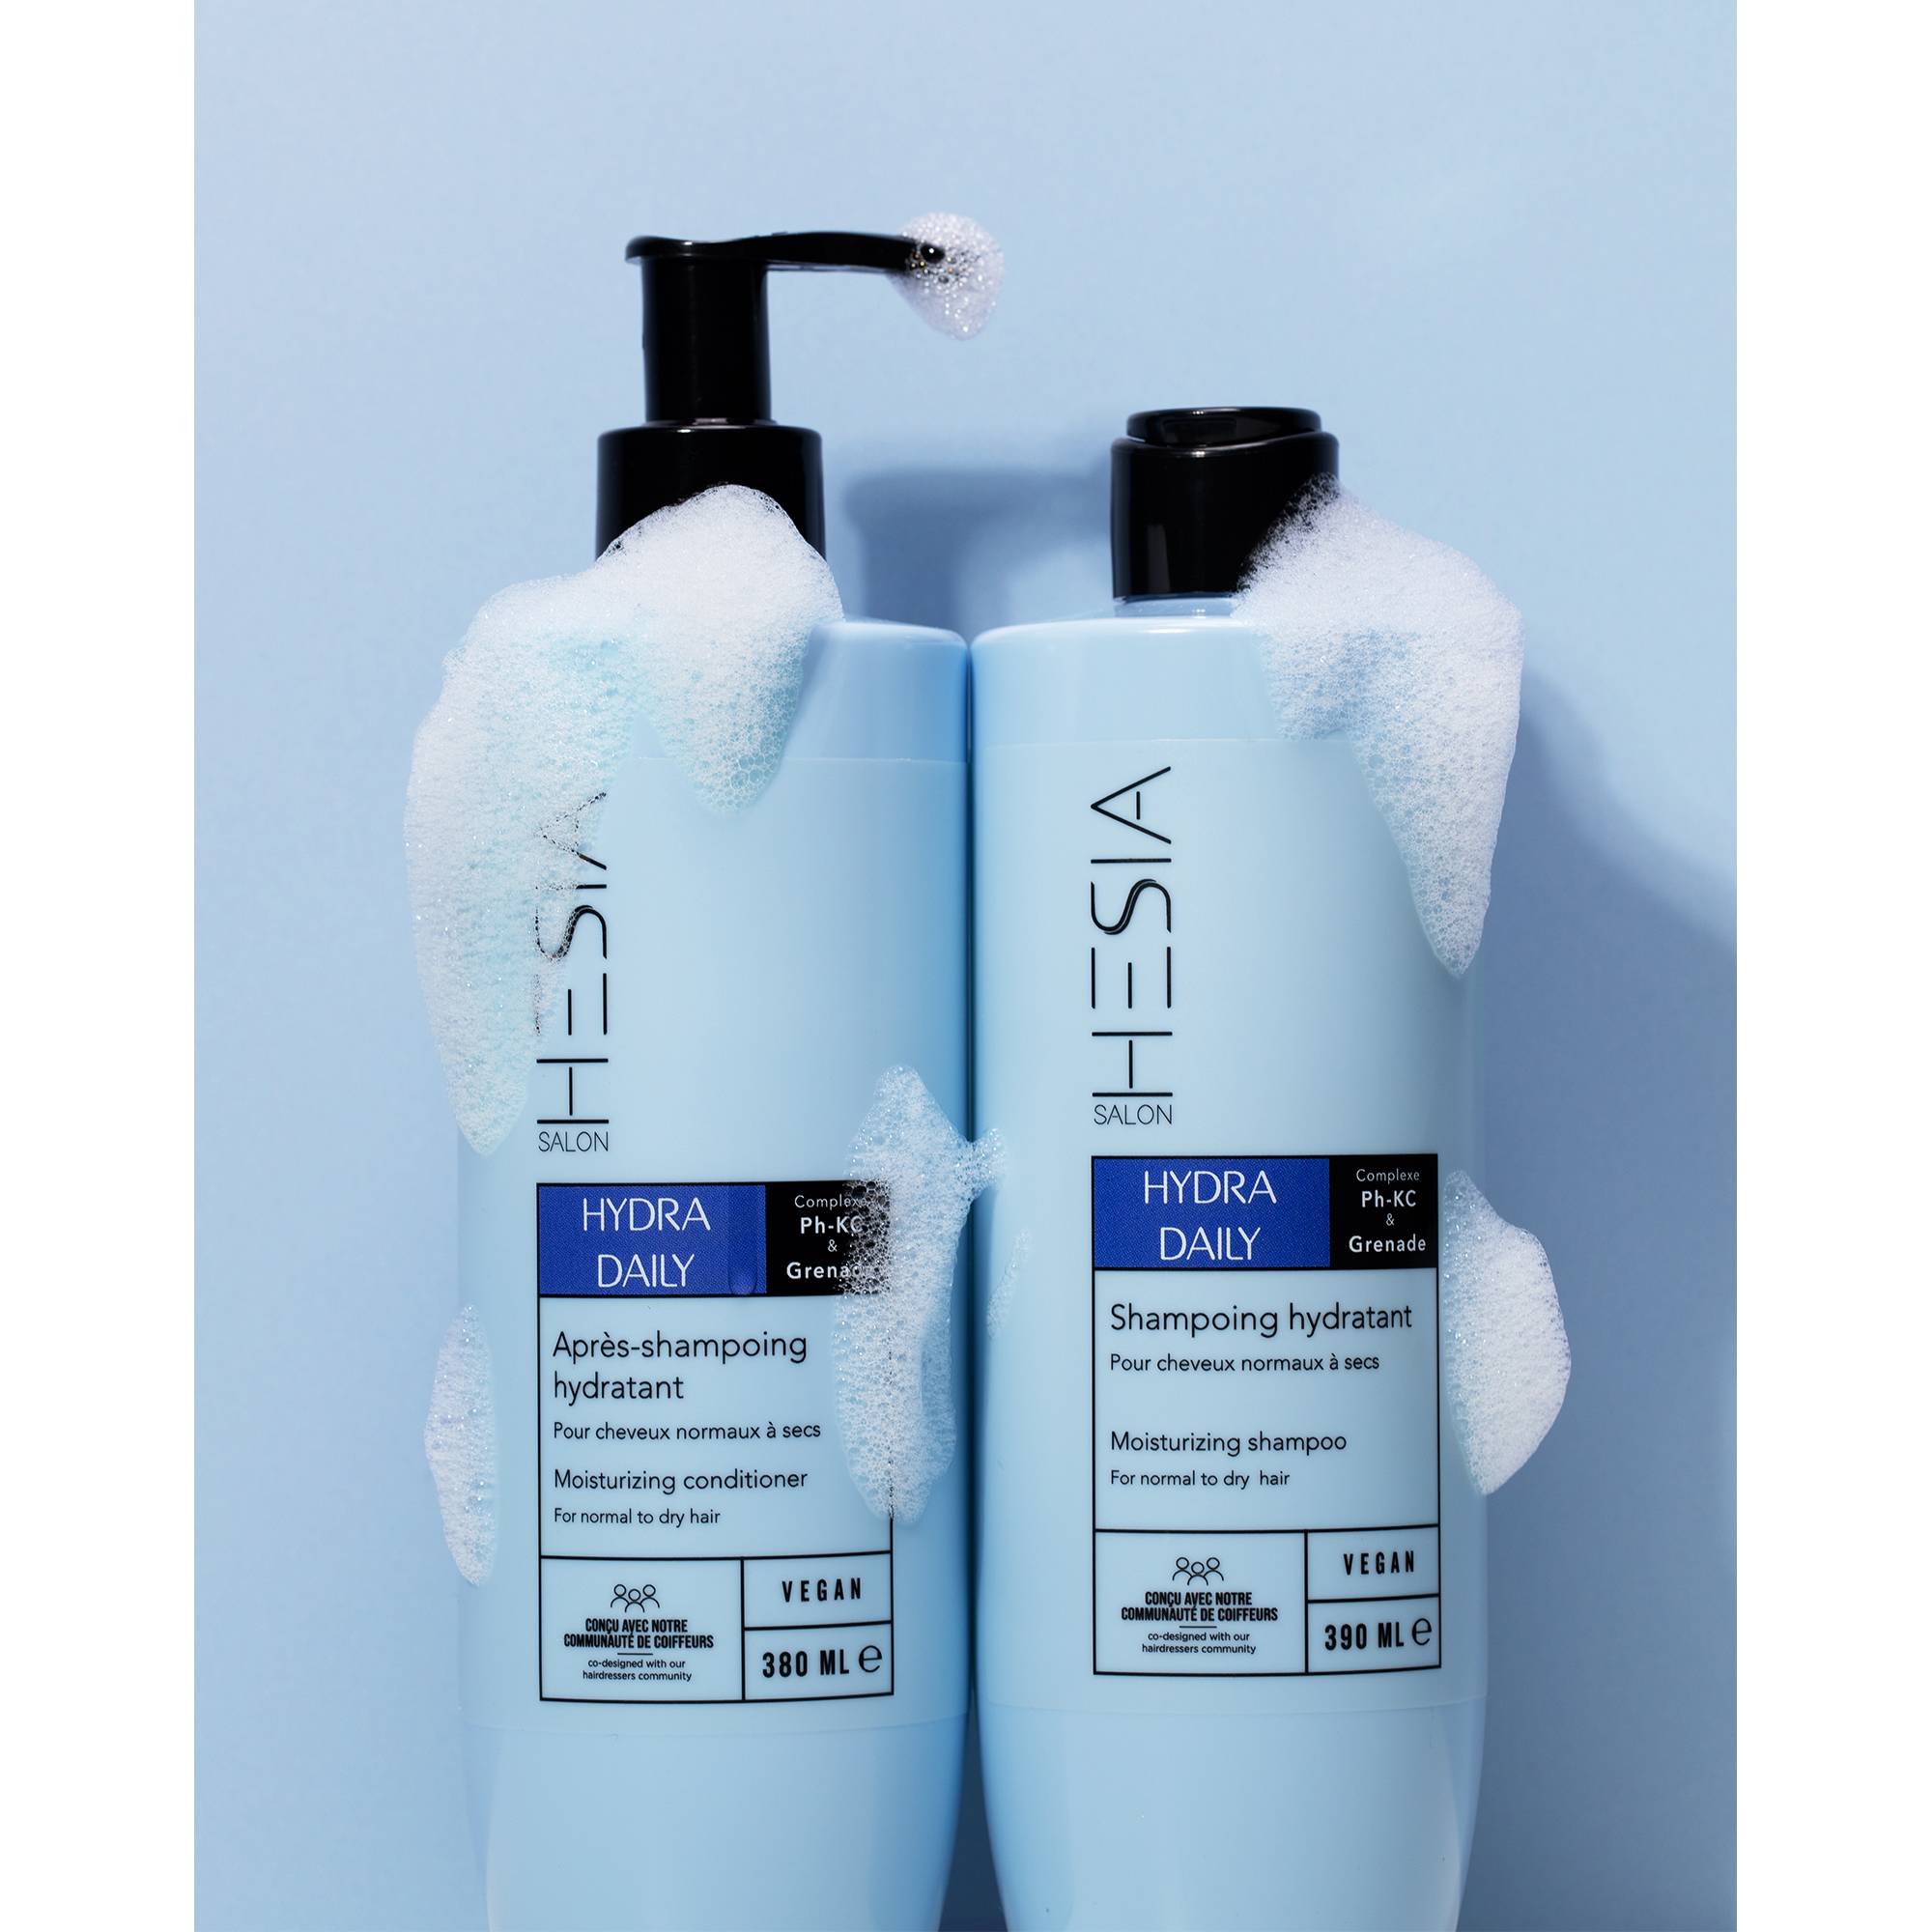 Après-shampoing hydratant Hydra Daily de la marque HESIA Salon Contenance 380ml - 4